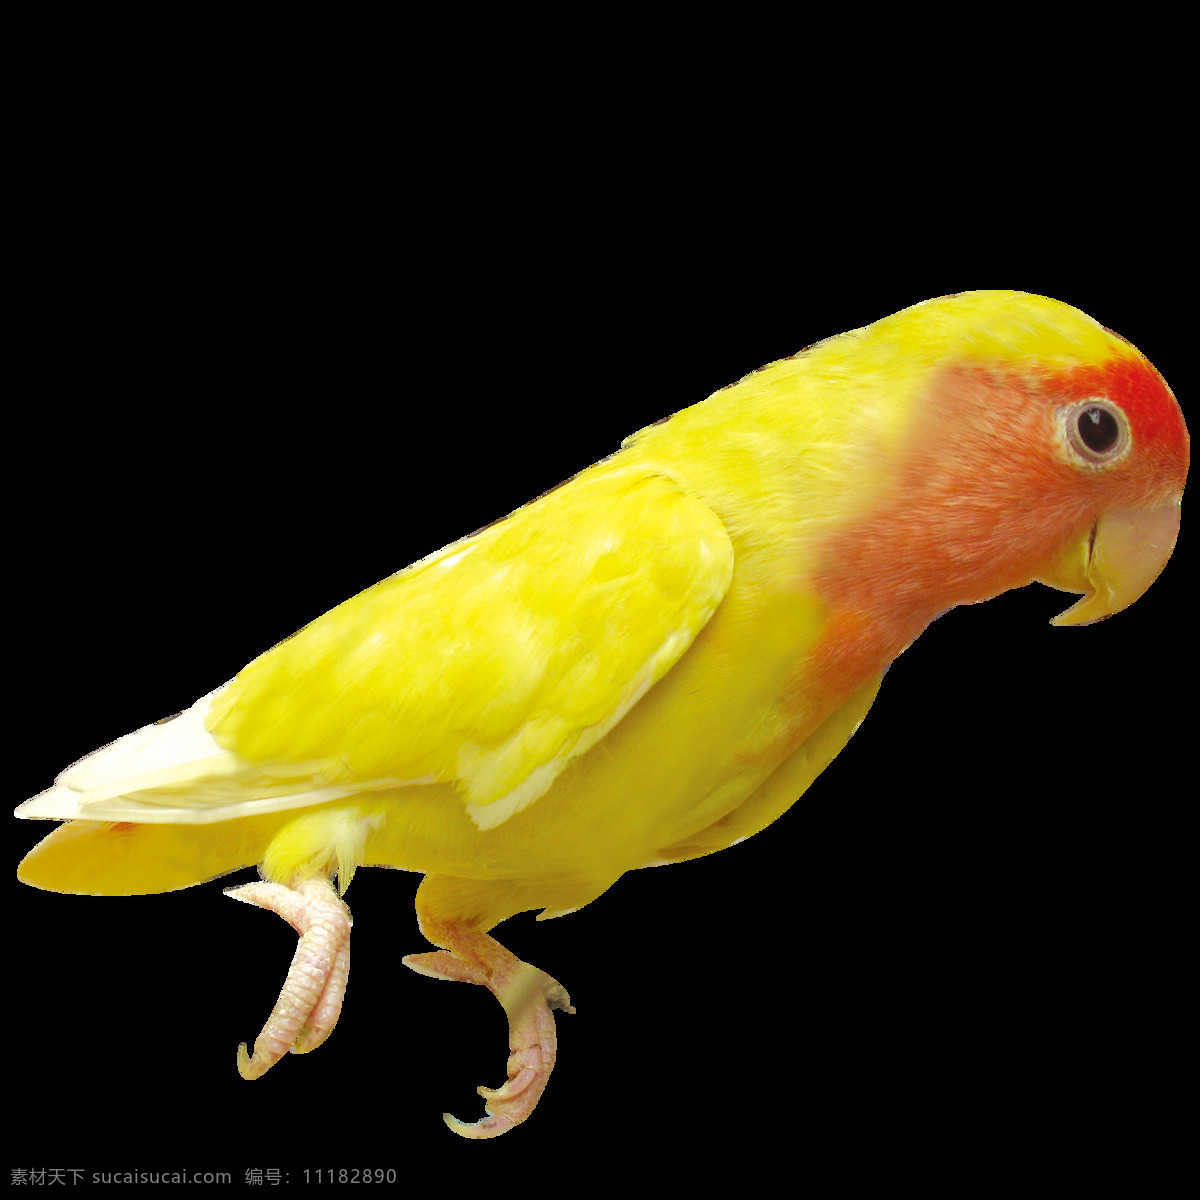 唯美 印象 鸟儿 绘画 黄色鸟儿 鲜明 生动 活泼 形象